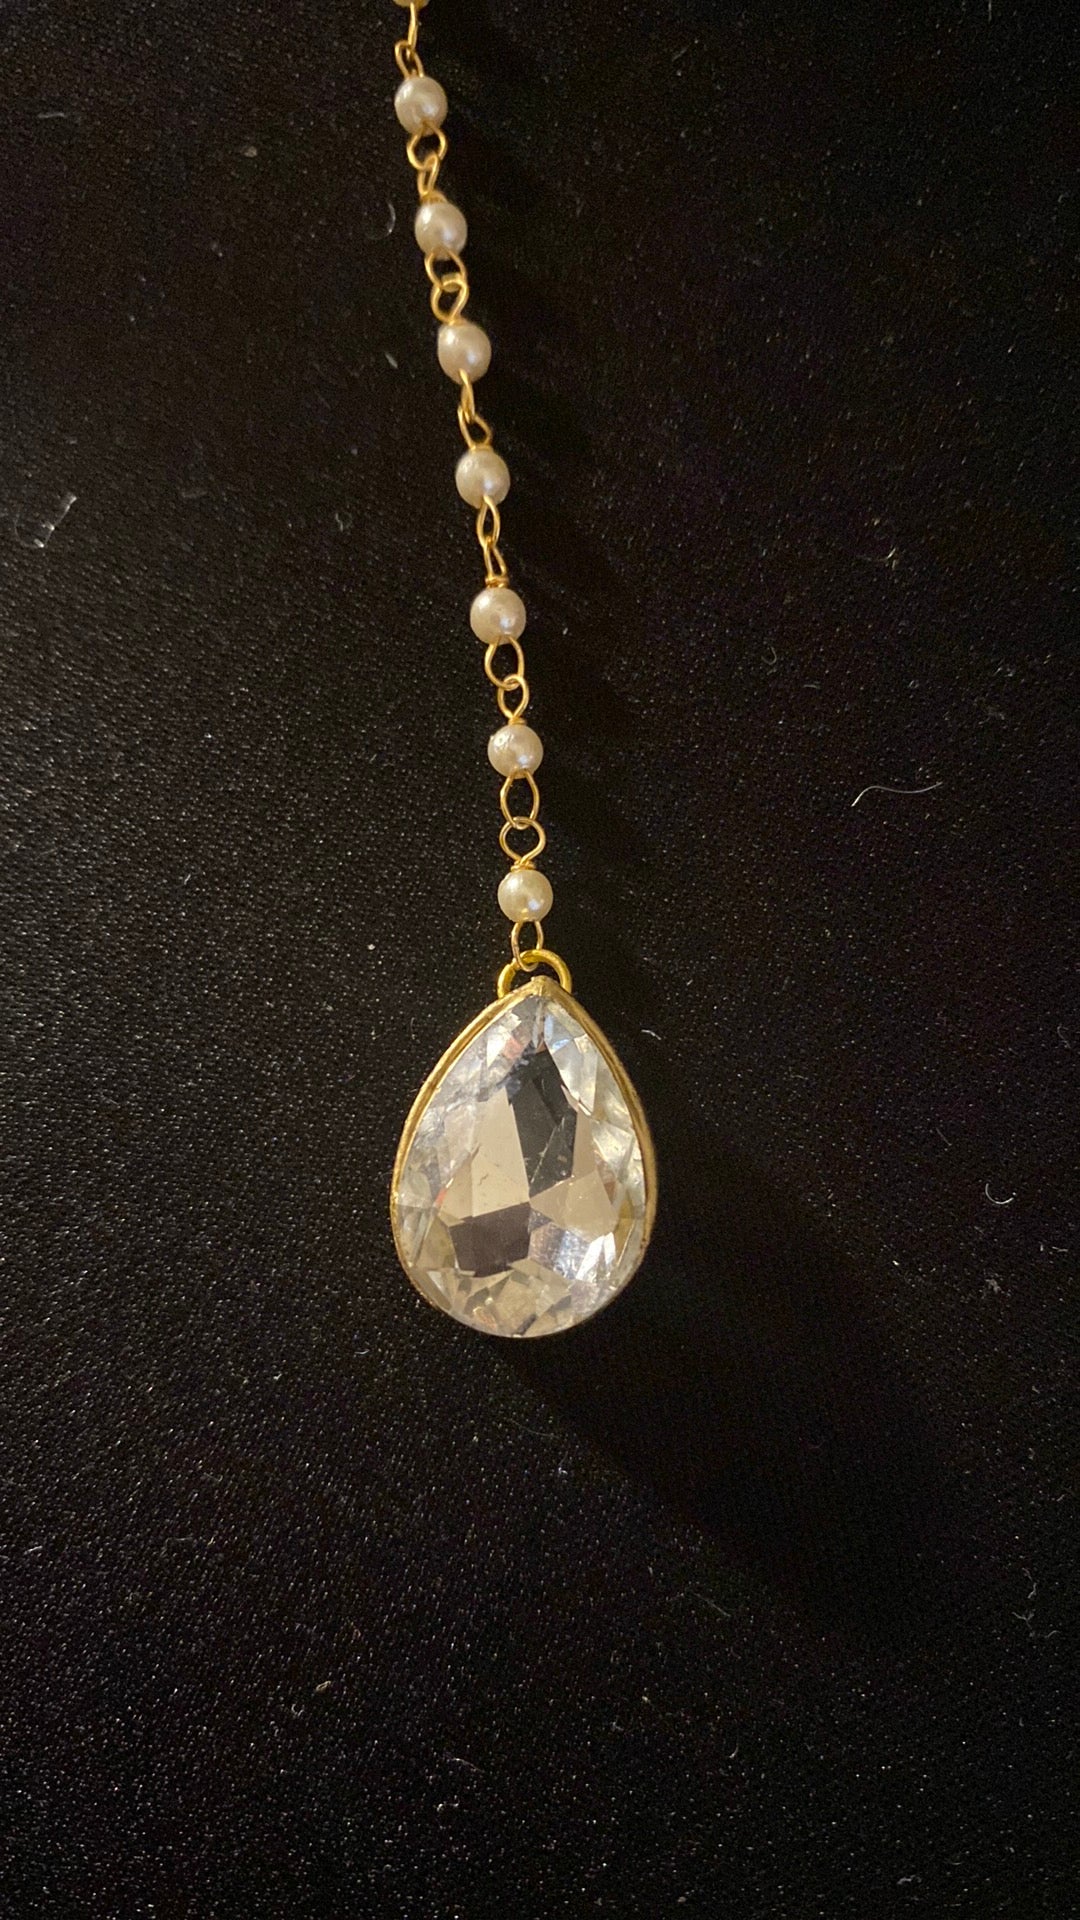 New Jewelry: Crystal Tikka